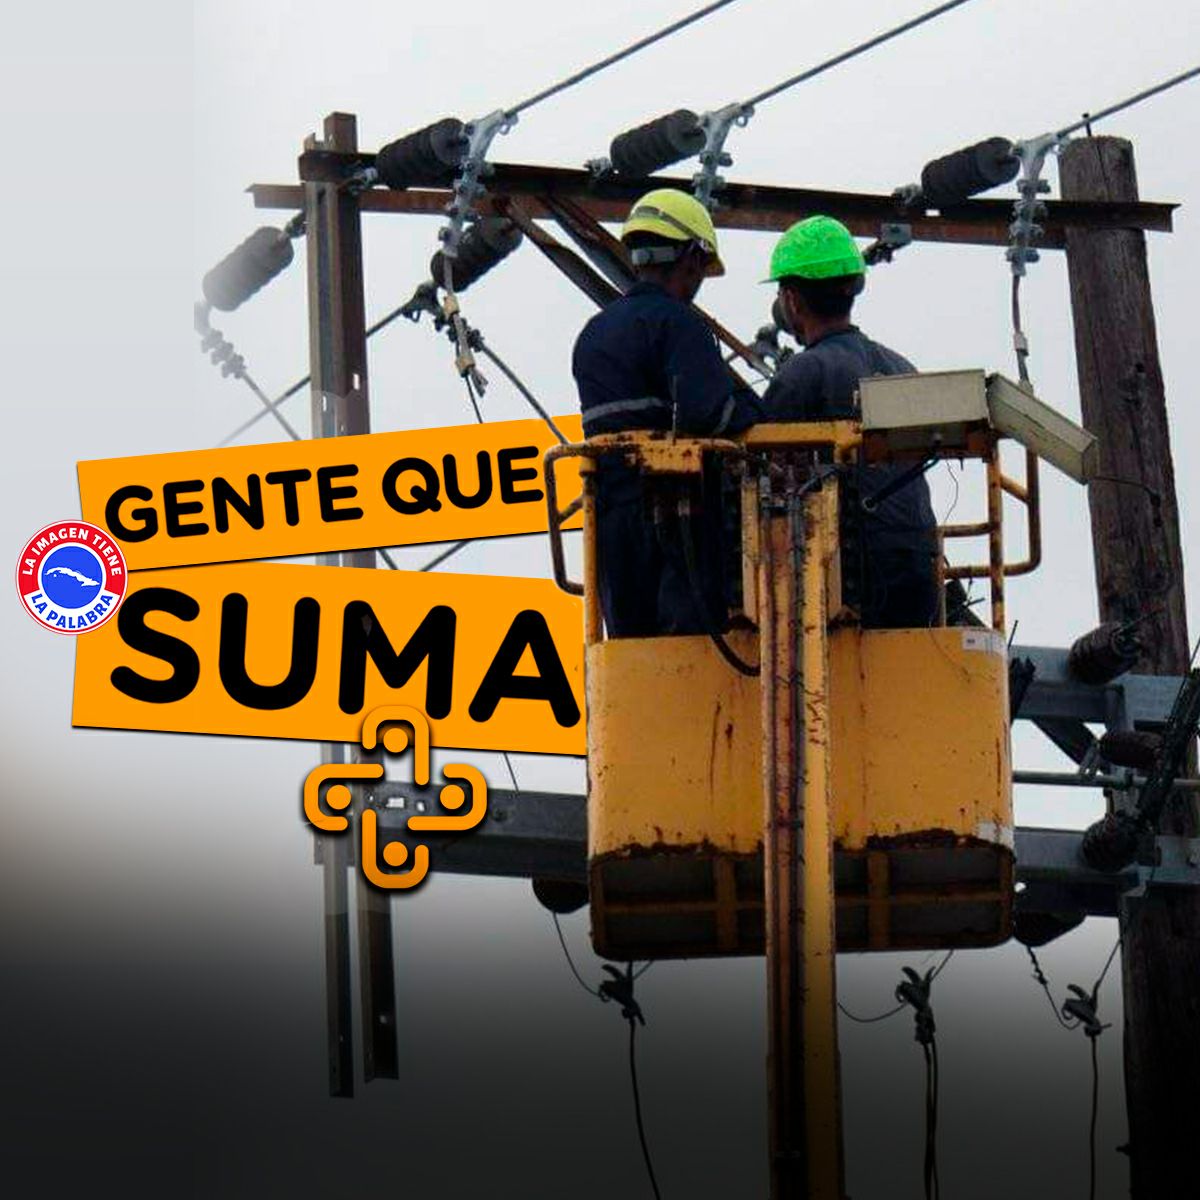 Recuperado el servicio eléctrico, #LaHabanaDeTodos agradece a las brigadas de linieros de la capital y de otras provincias, que trabajaron intensas jornadas sin descanso hasta completar la labor de restablecer la electricidad. #LaHabanaViveEnMí